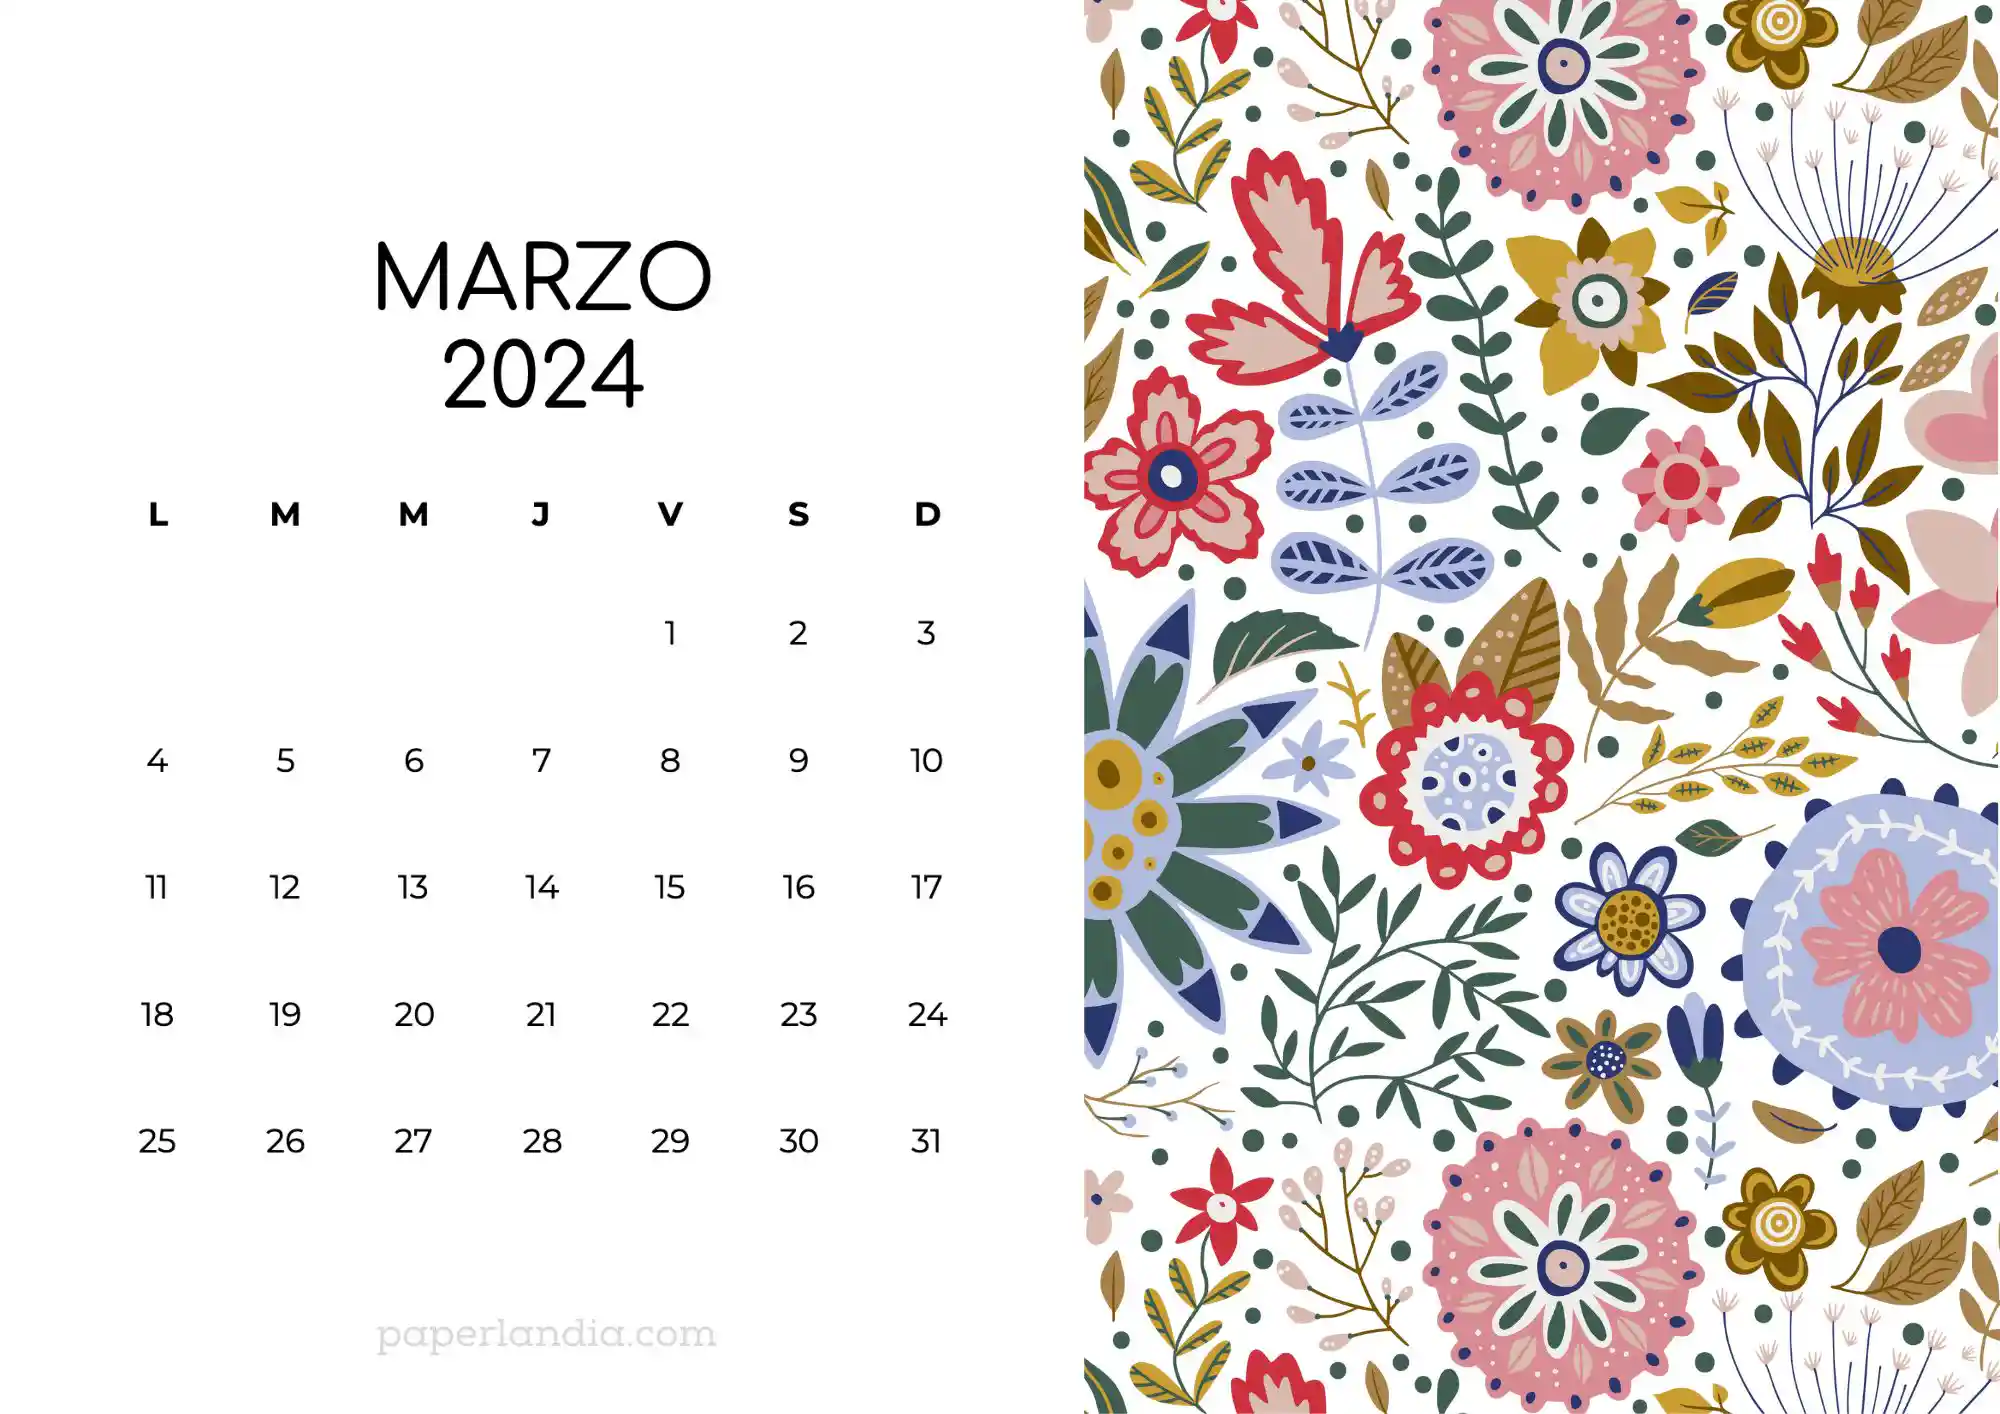 Calendario marzo 2024 horizontal con flores escandinavas fondo blanco